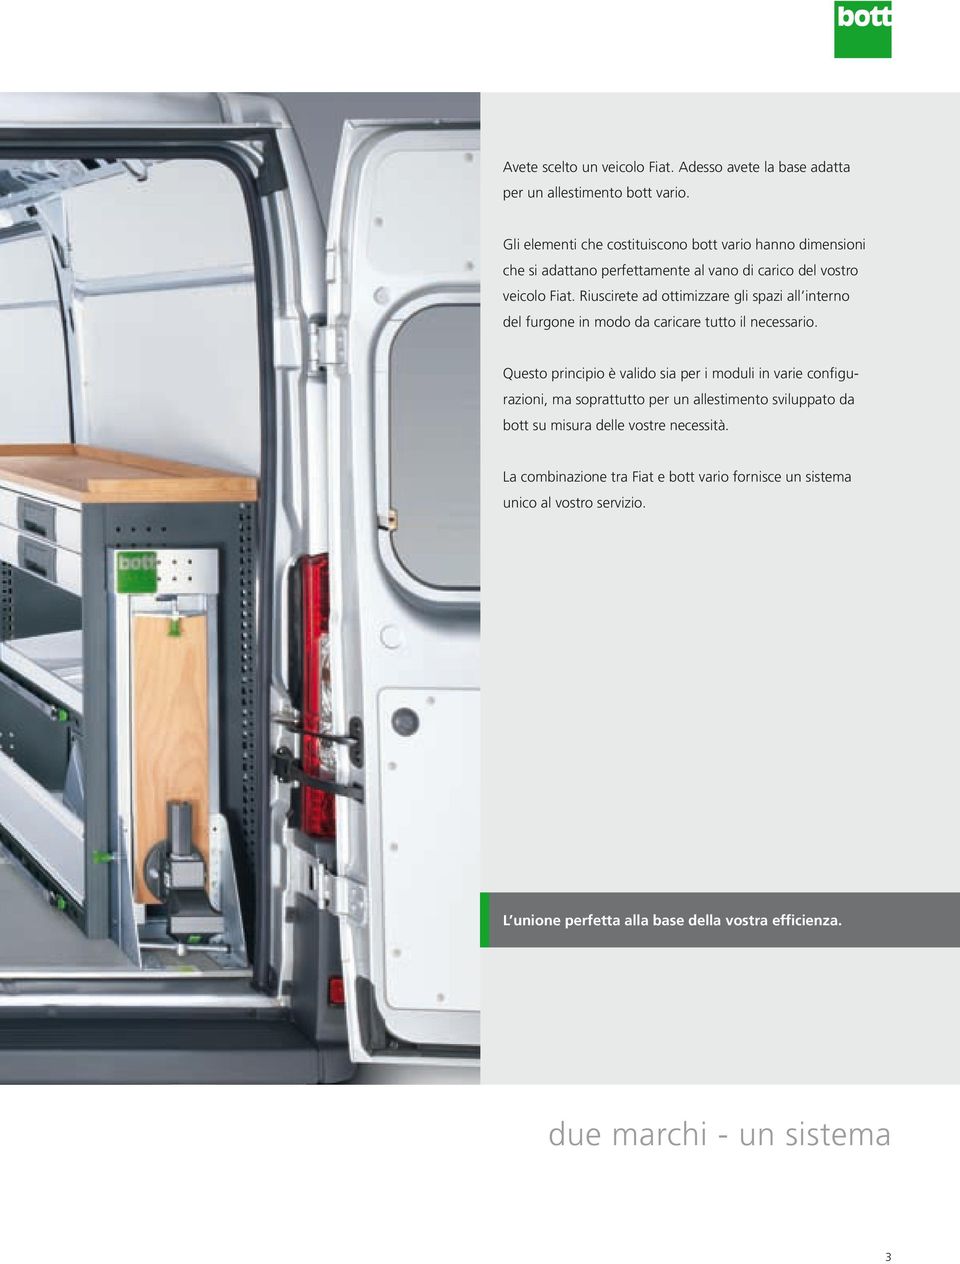 Riuscirete ad ottimizzare gli spazi all interno del furgone in modo da caricare tutto il necessario.